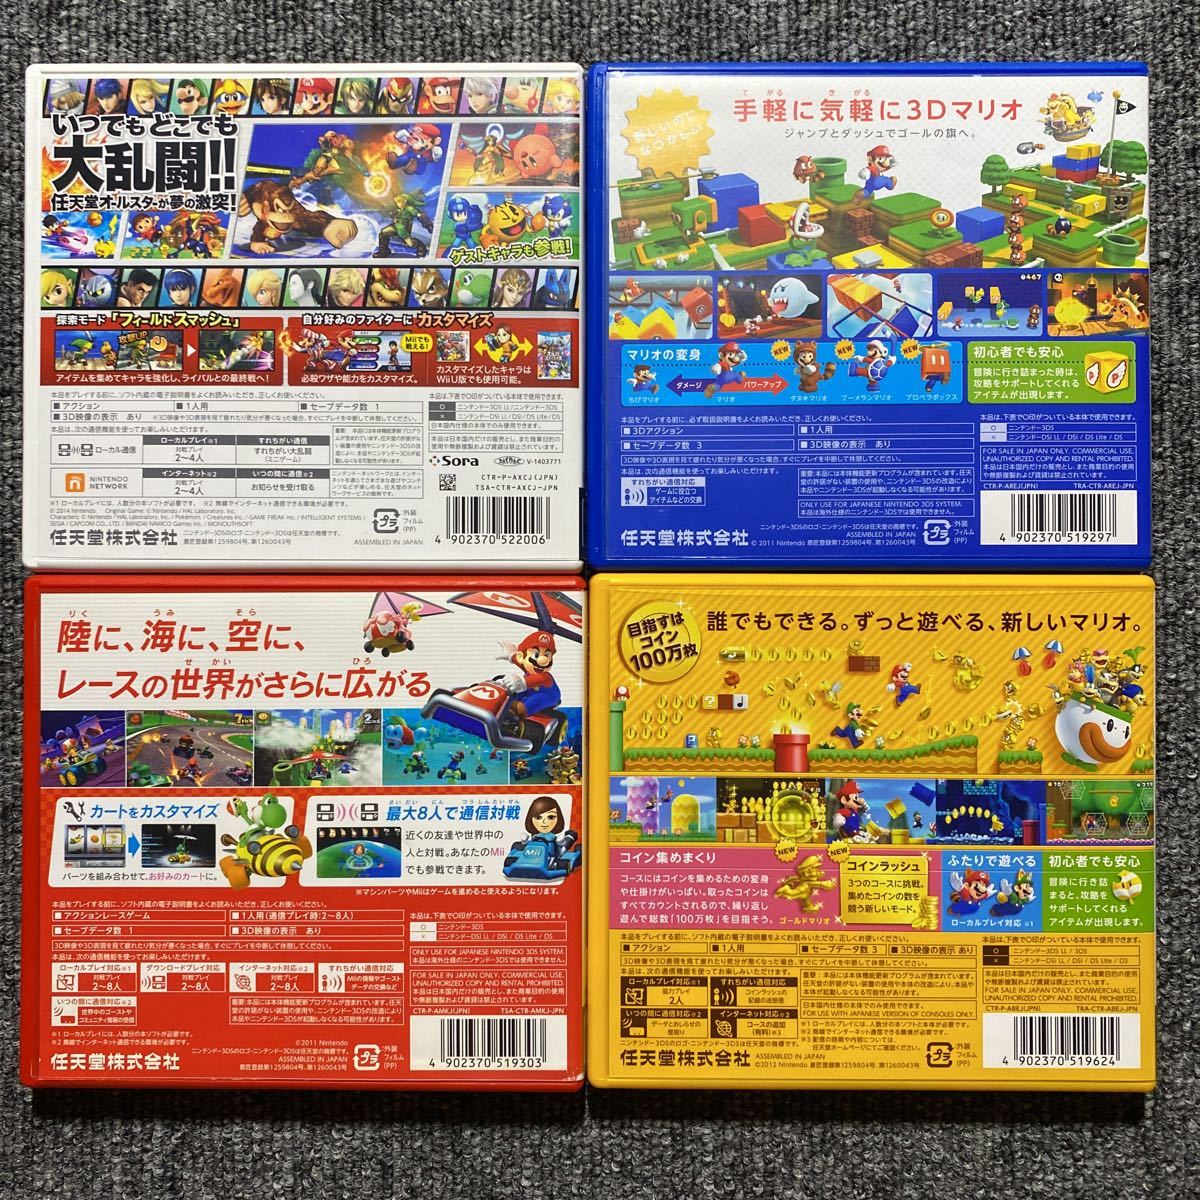 3DS 大乱闘スマッシュブラザーズ スーパーマリオ3Dランド マリオカート7 ニュースーパーマリオブラザーズ2